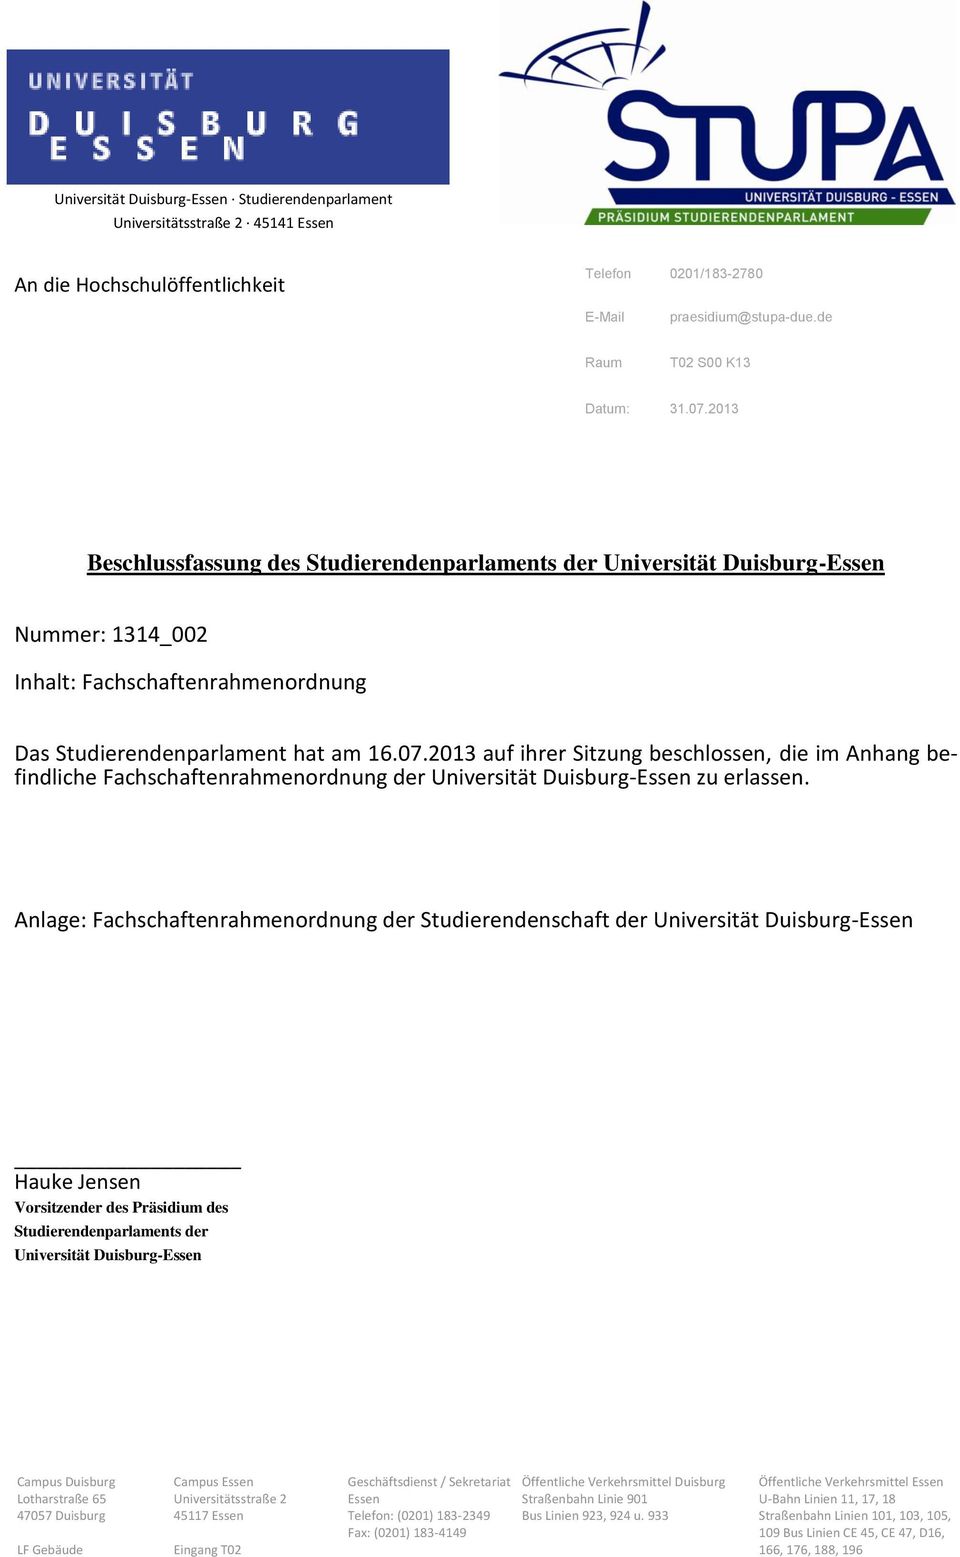 2013 auf ihrer Sitzung beschlossen, die im Anhang befindliche Fachschaftenrahmenordnung der Universität Duisburg-Essen zu erlassen.